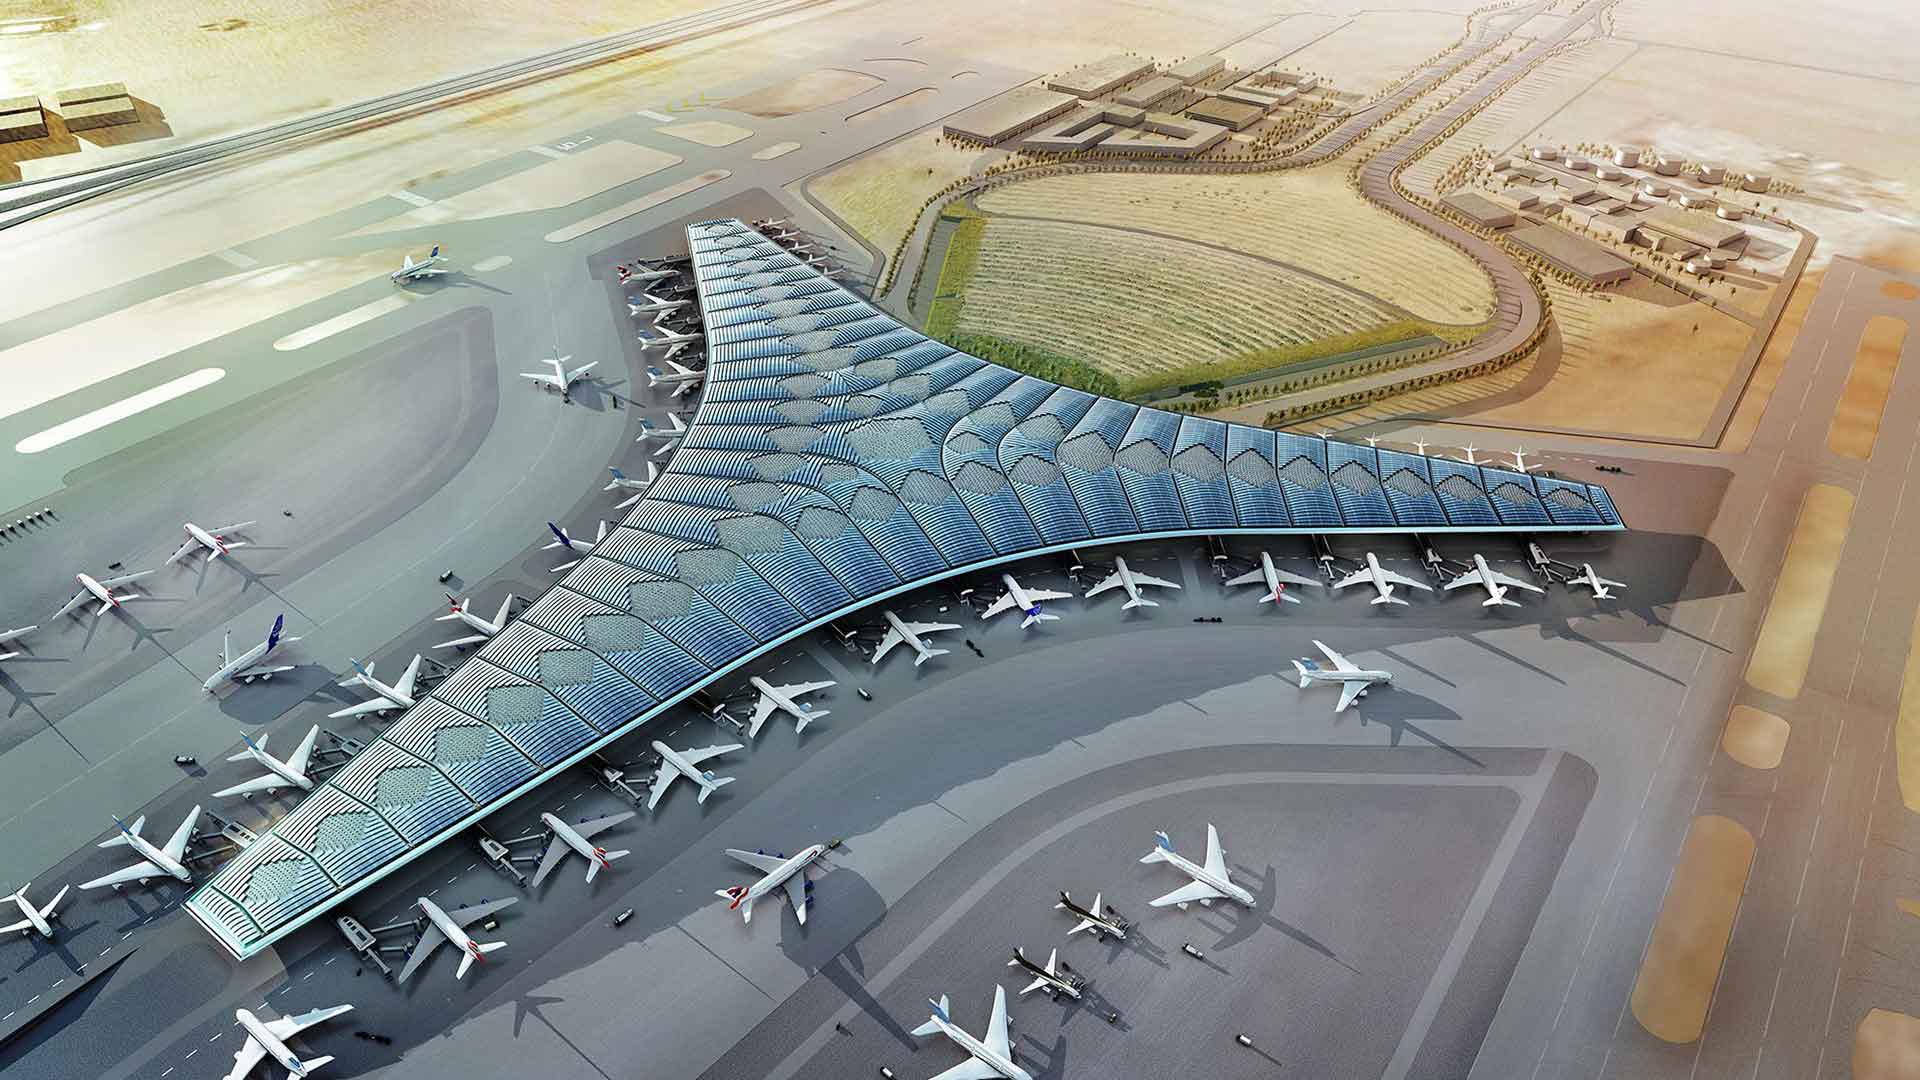 Kuwaitin kansainvälinen lentokenttä on Farwaniyassa Kuwaitissa 15,5 km (9,6 mailia) etelään Kuwait Citystä sijaitseva lentokenttä, jonka pinta-ala on 37,7 neliökilometriä (14,6 neliökilometriä).Se on Al Jazeeran ja Kuwaitin lentoyhtiöiden keskus.